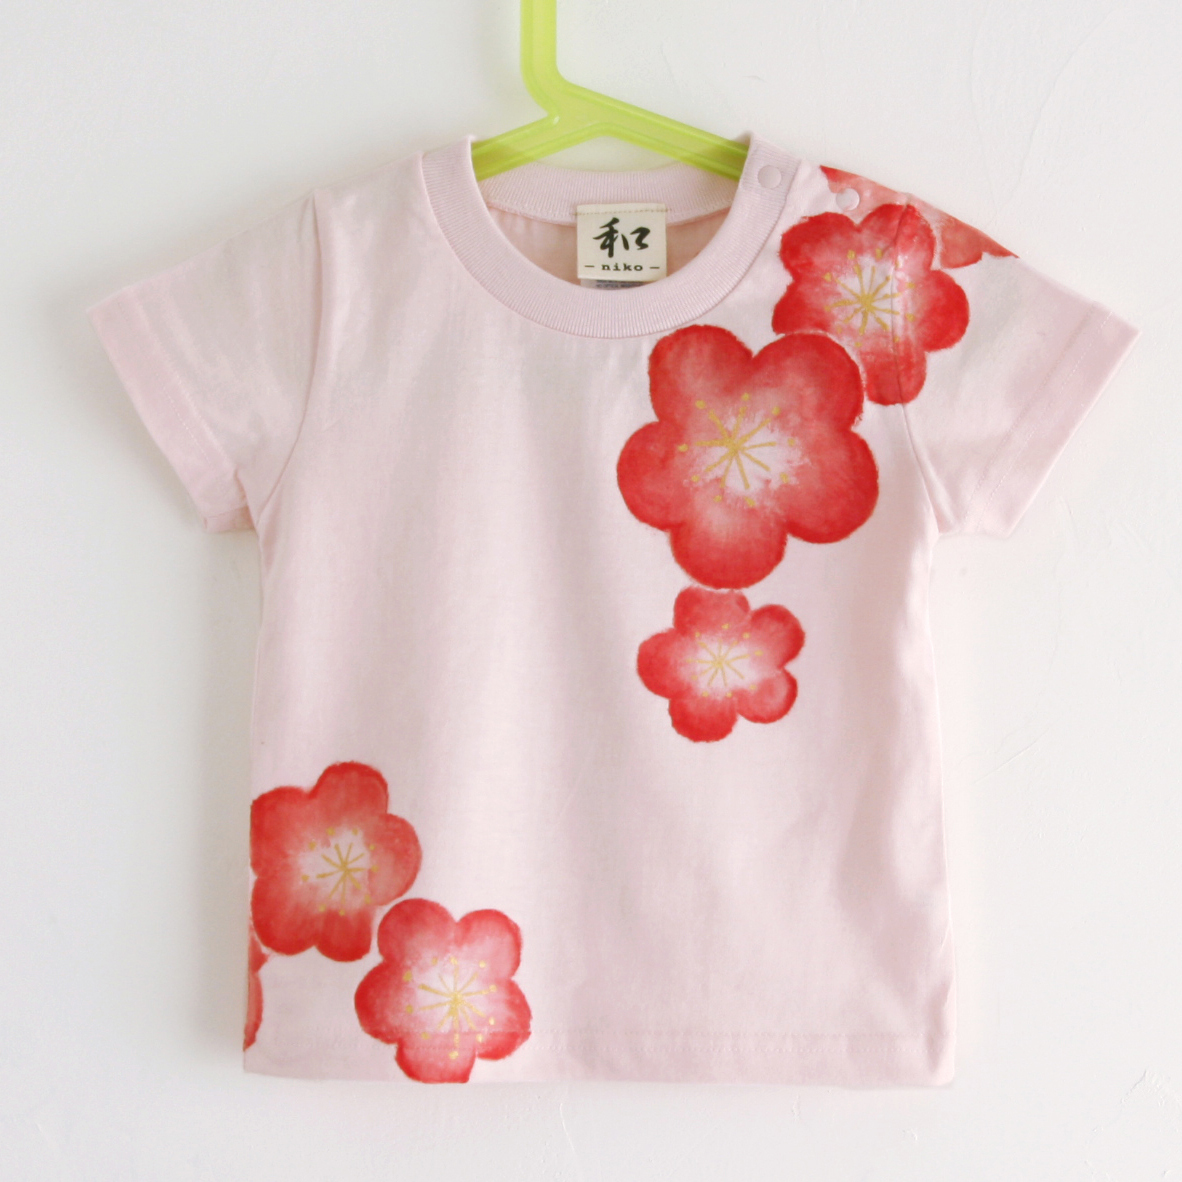 बच्चों की टी-शर्ट, आकार 130, गुलाबी, बेर फूल पैटर्न टी शर्ट, हाथ से तैयार बेर के फूल का पैटर्न टी-शर्ट, आधी बाजू, जापानी पैटर्न, जापानी शैली में, रेट्रो, हस्तनिर्मित, सबसे ऊपर, छोटी आस्तीन वाली टी-शर्ट, 130(125~134सेमी)